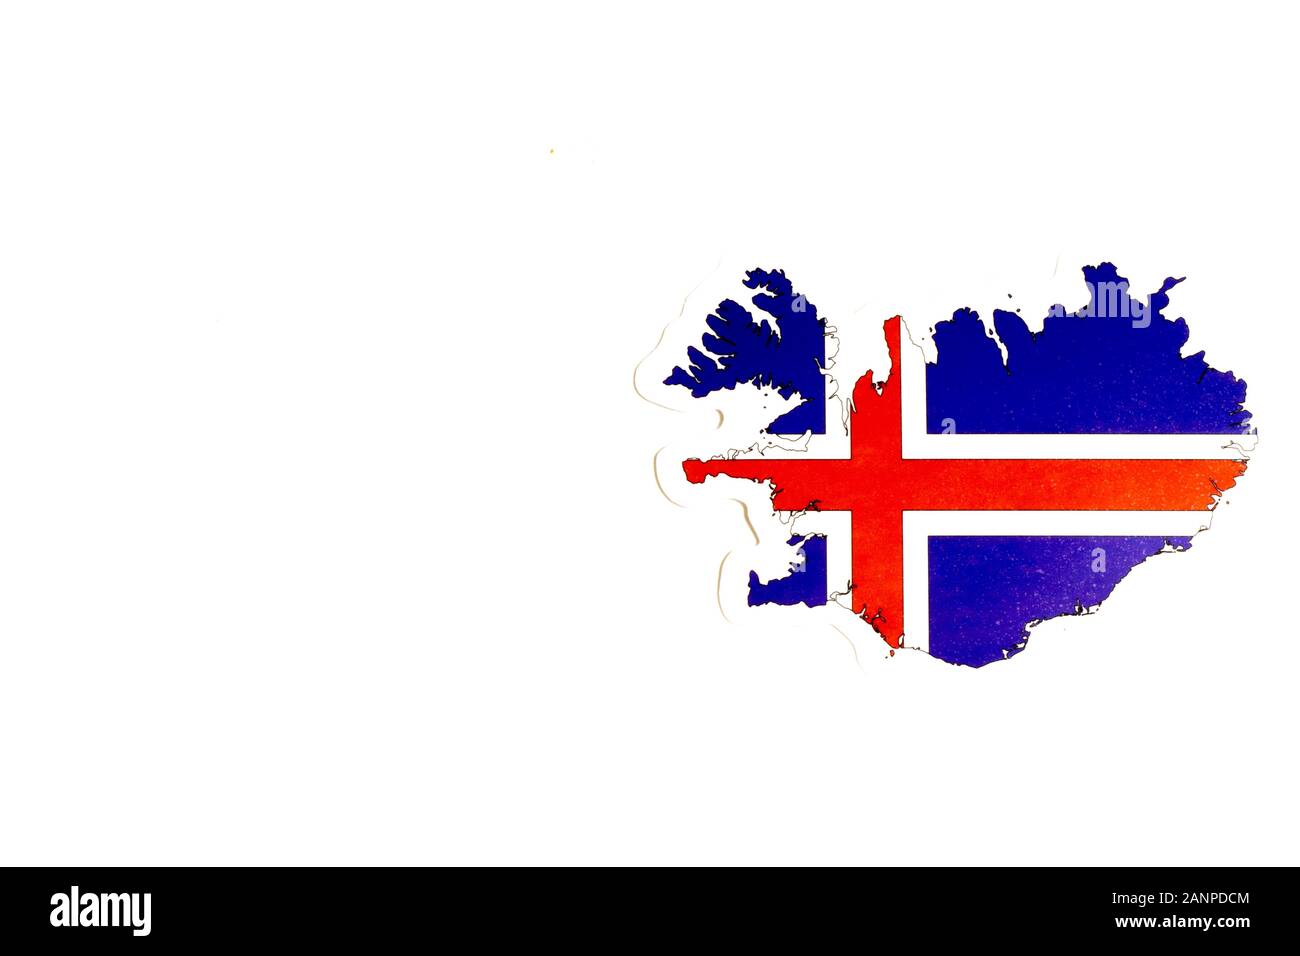 Los Angeles, California, Stati Uniti d'America - 17 gennaio 2020: Bandiera nazionale dell'Islanda. Contorno del paese su sfondo bianco con spazio di copia. Illustrazione politica Foto Stock